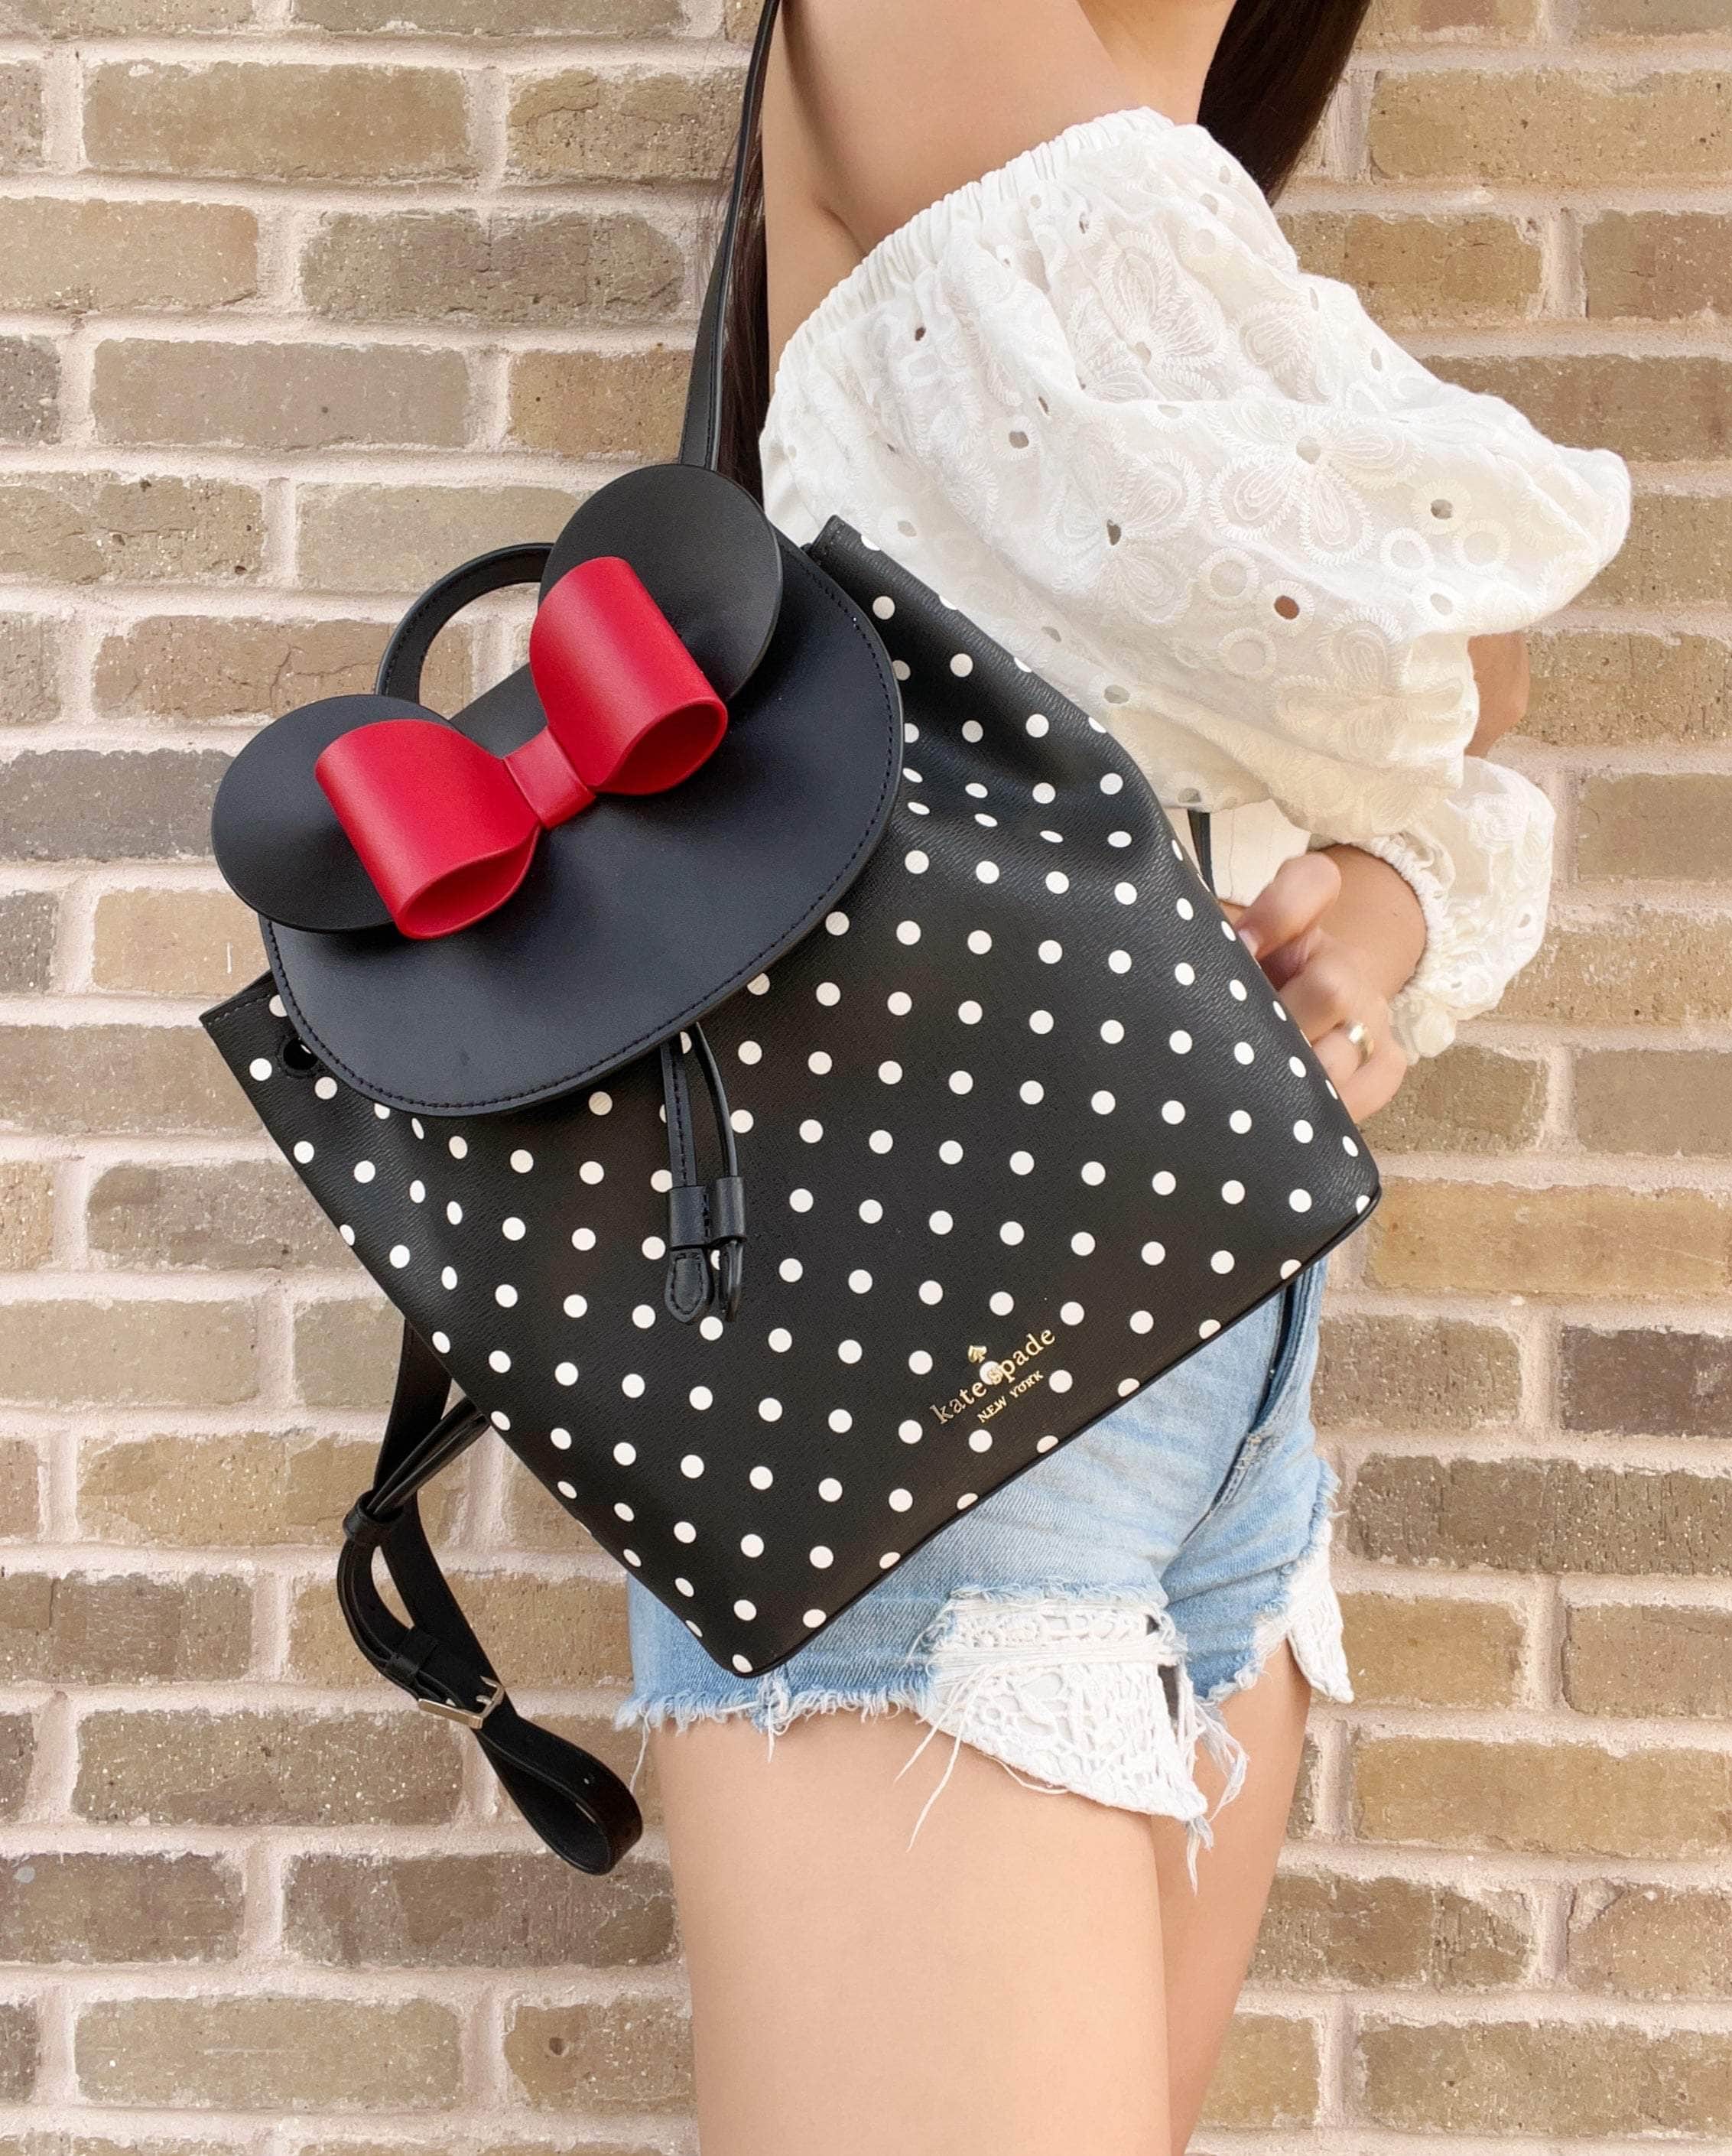 Disney Minnie Mouse Polka Dot Bow Zip Around Wallet